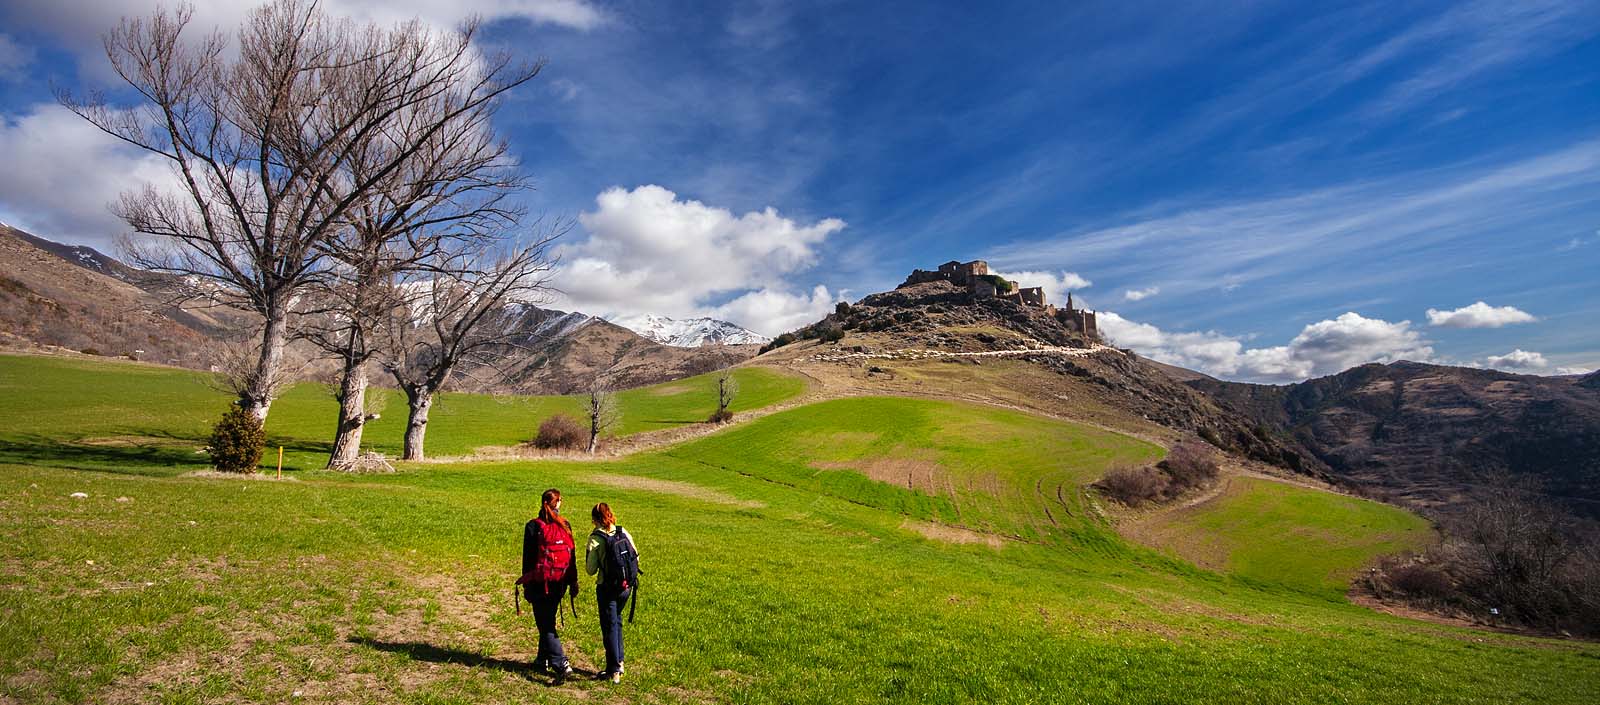 Parella caminant cap a Erillcastell - Excursió al Castell dels Senyors d'Erill - Roger Gras Guia d'Aigüestortes - Vall de Boí - Pirineus